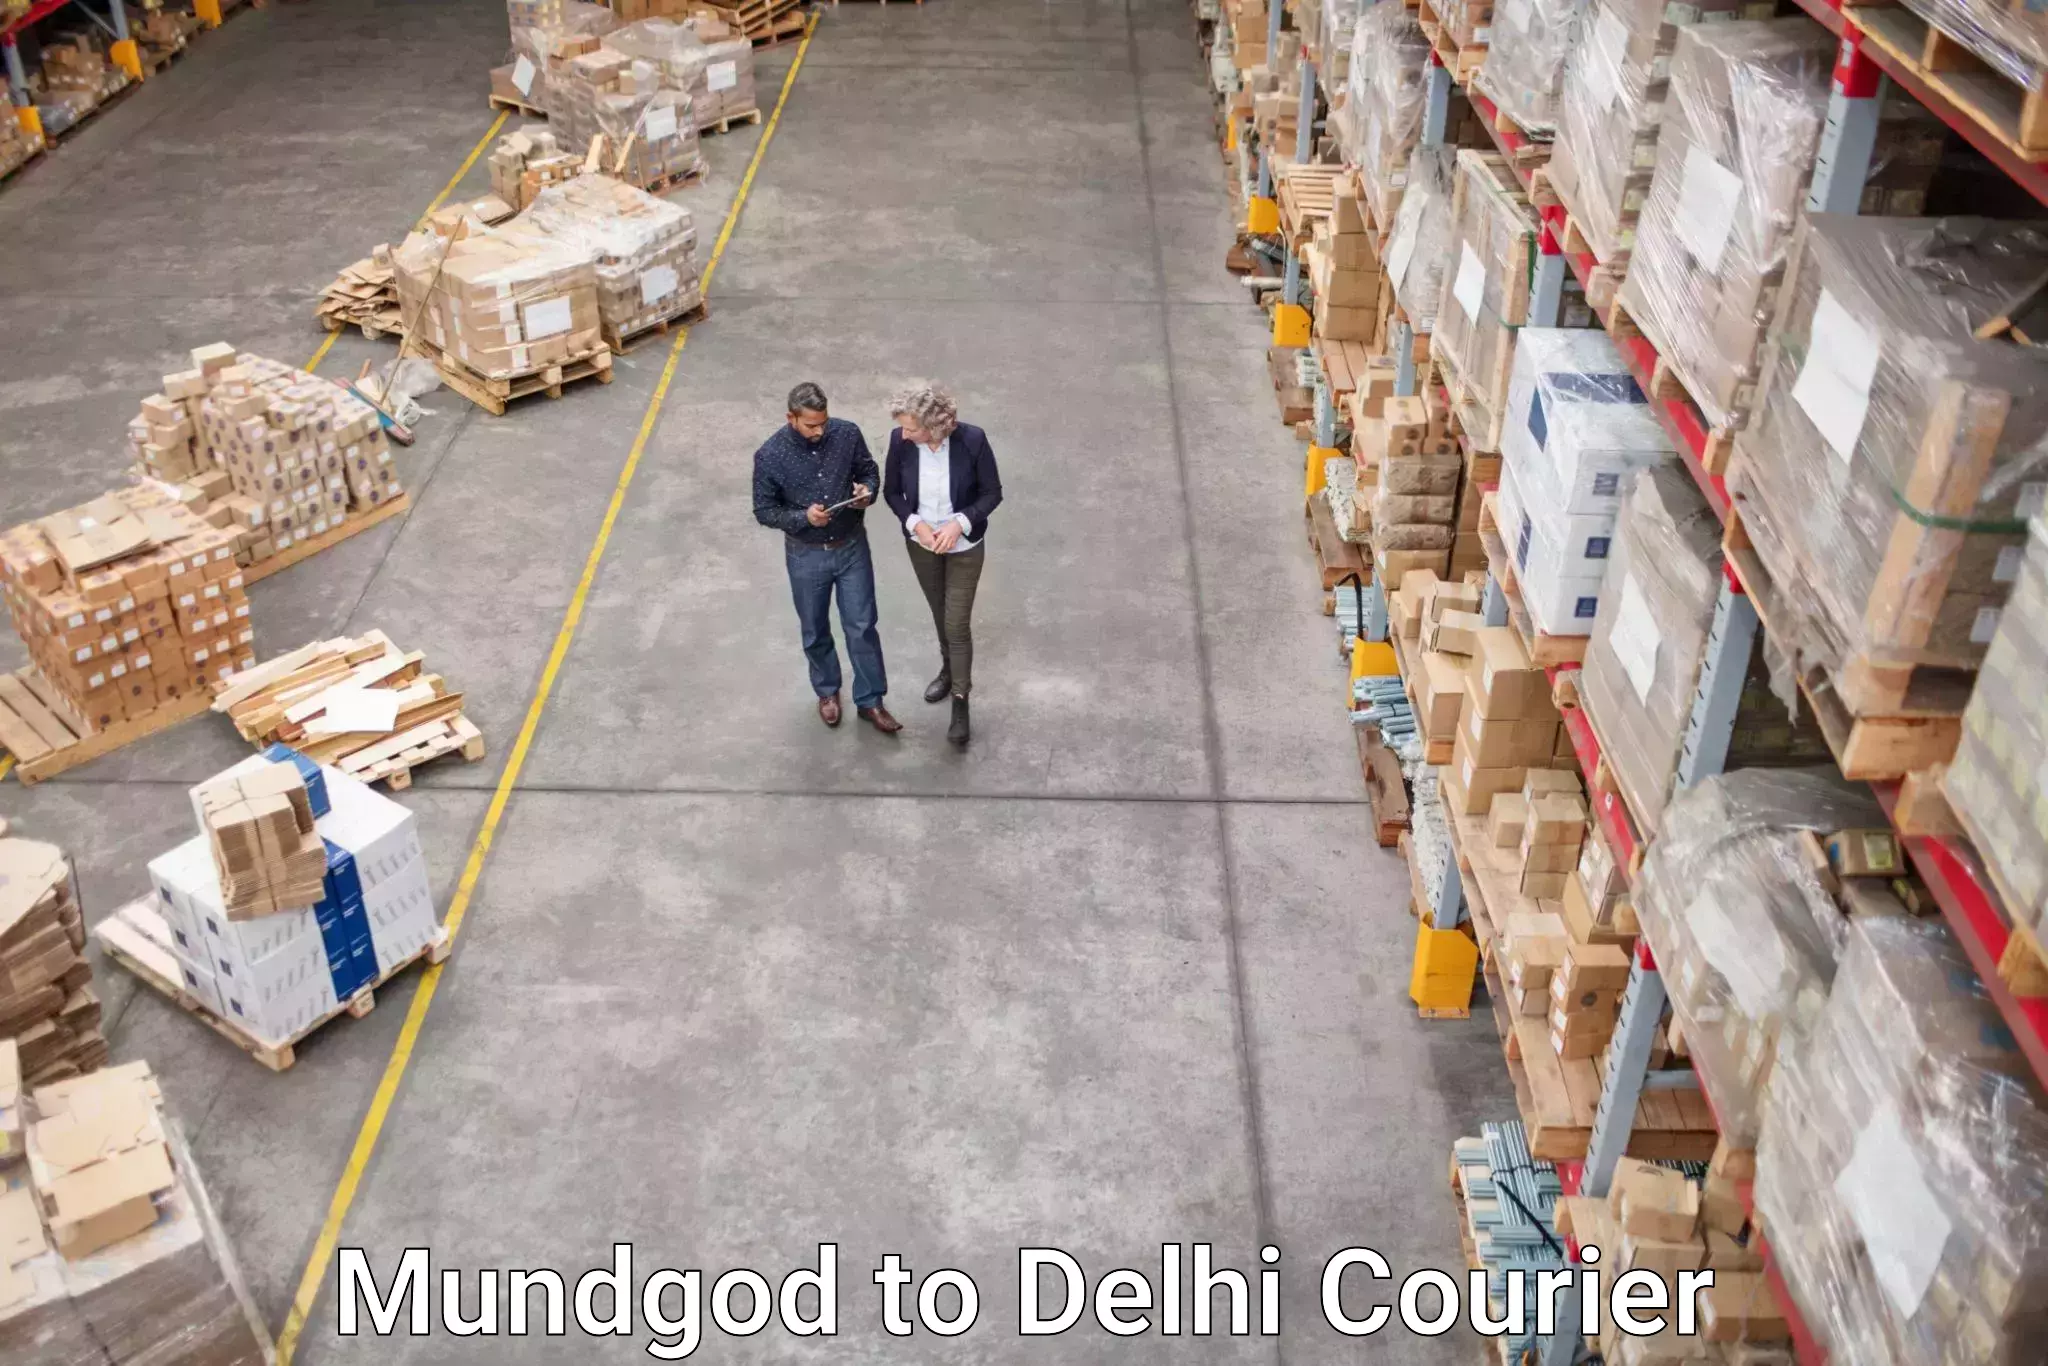 Cross-border shipping in Mundgod to NCR